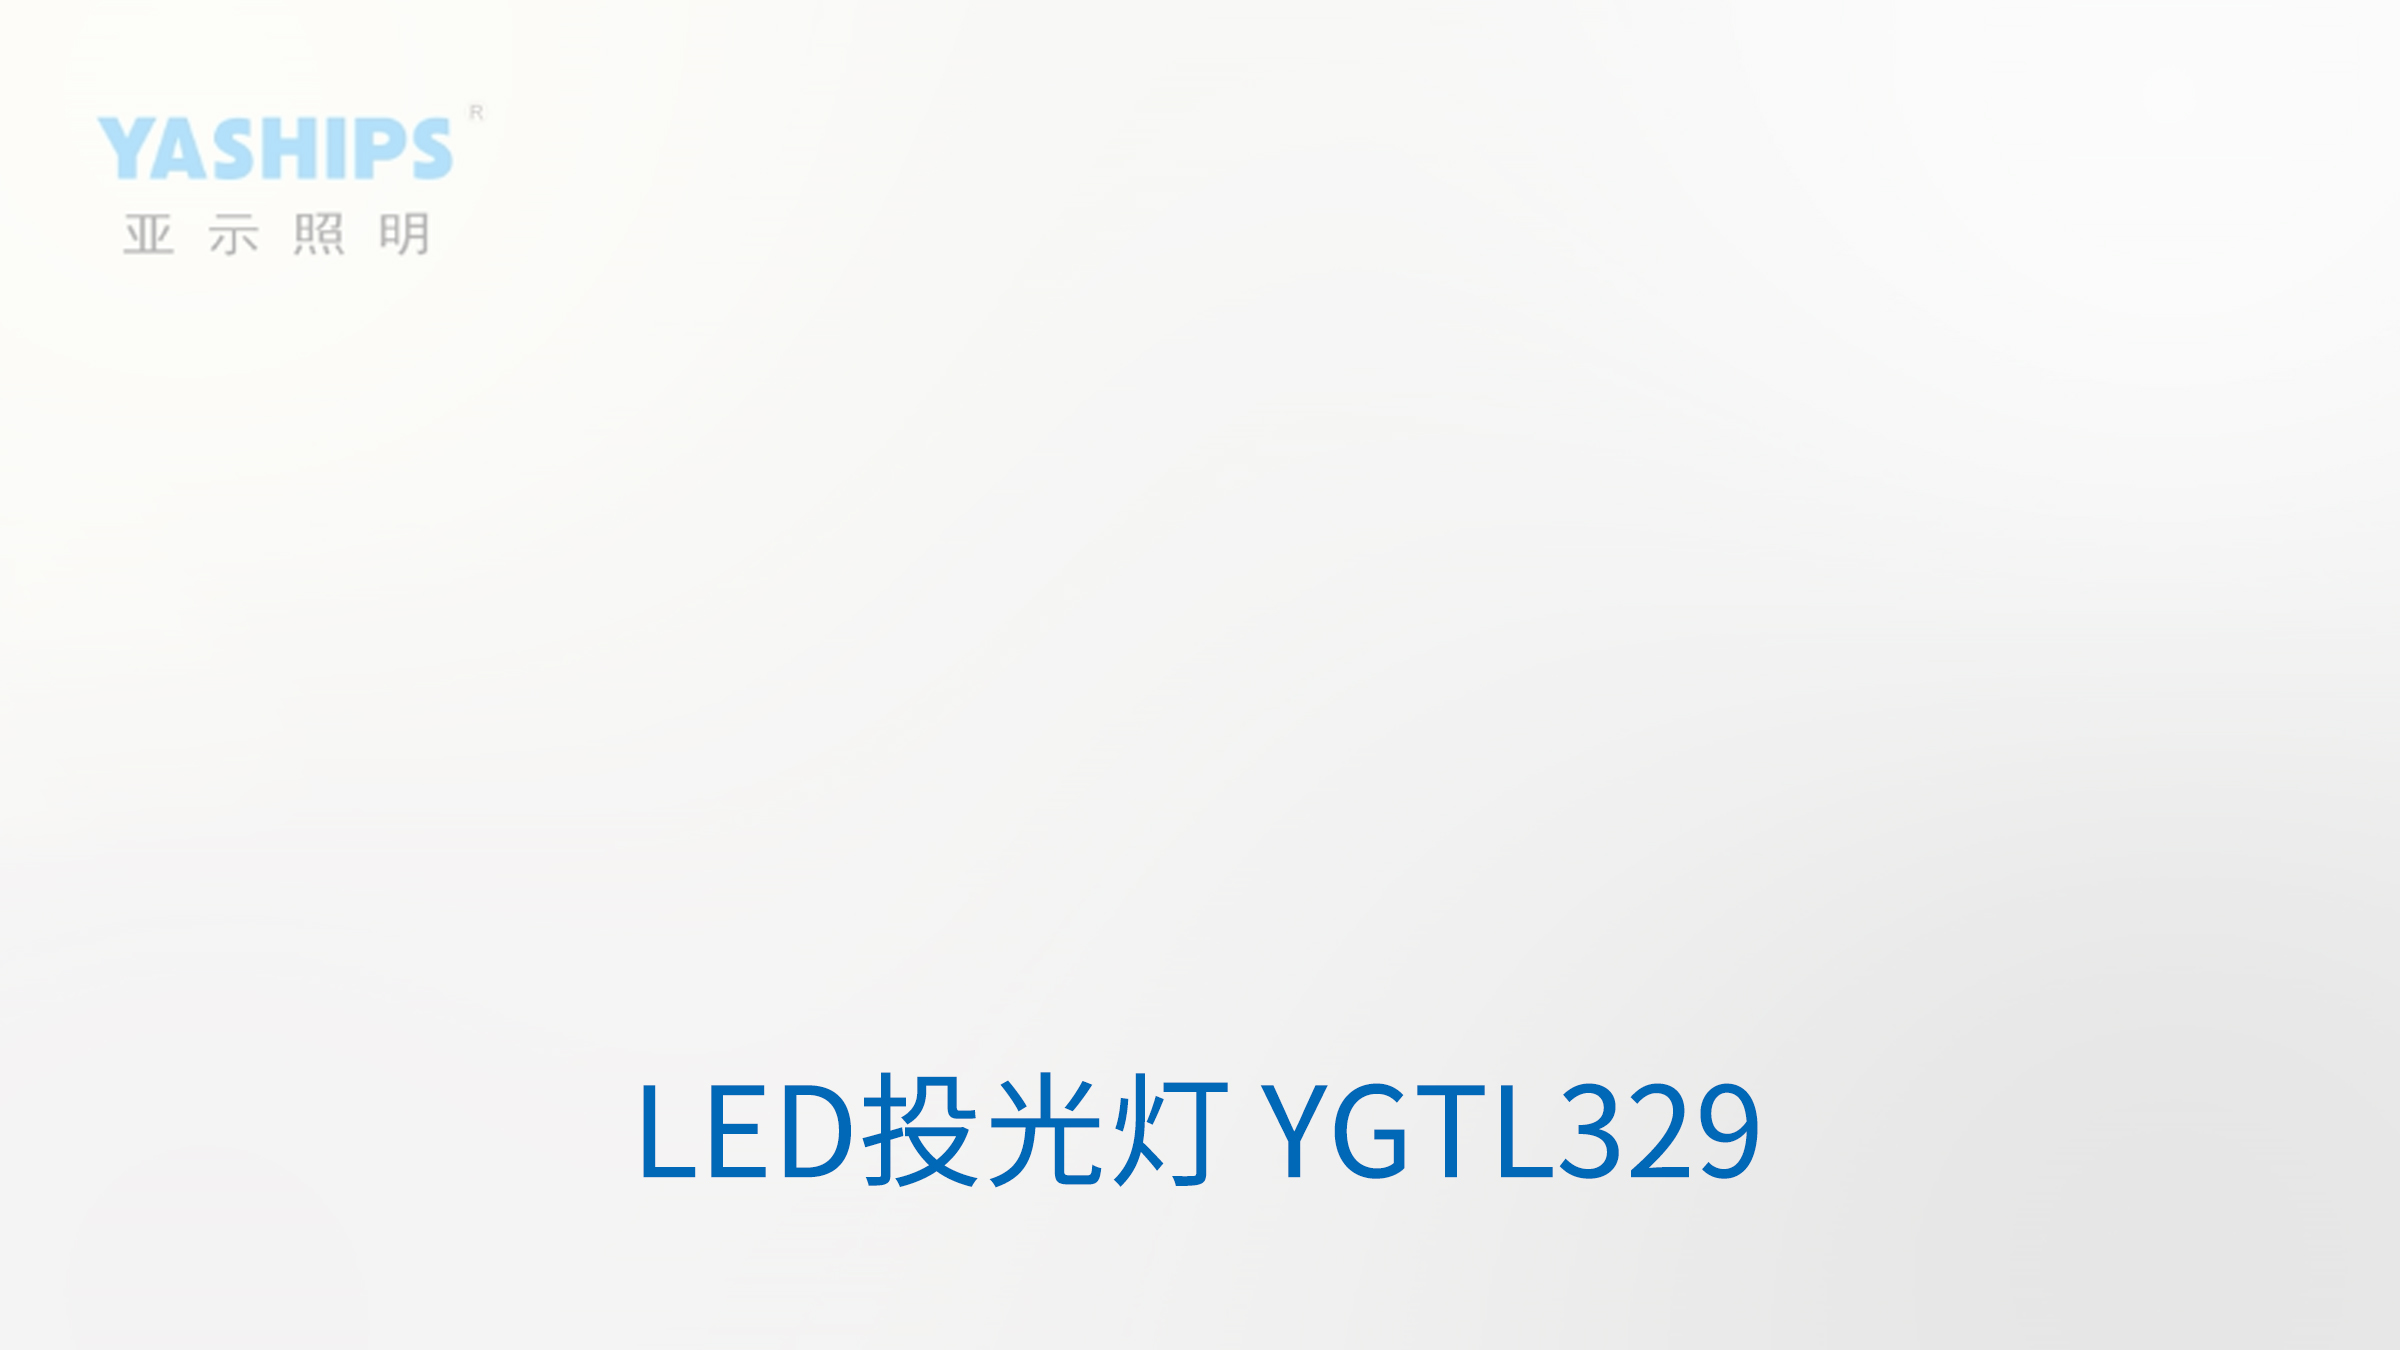 LED投光灯 YGTL329.jpg